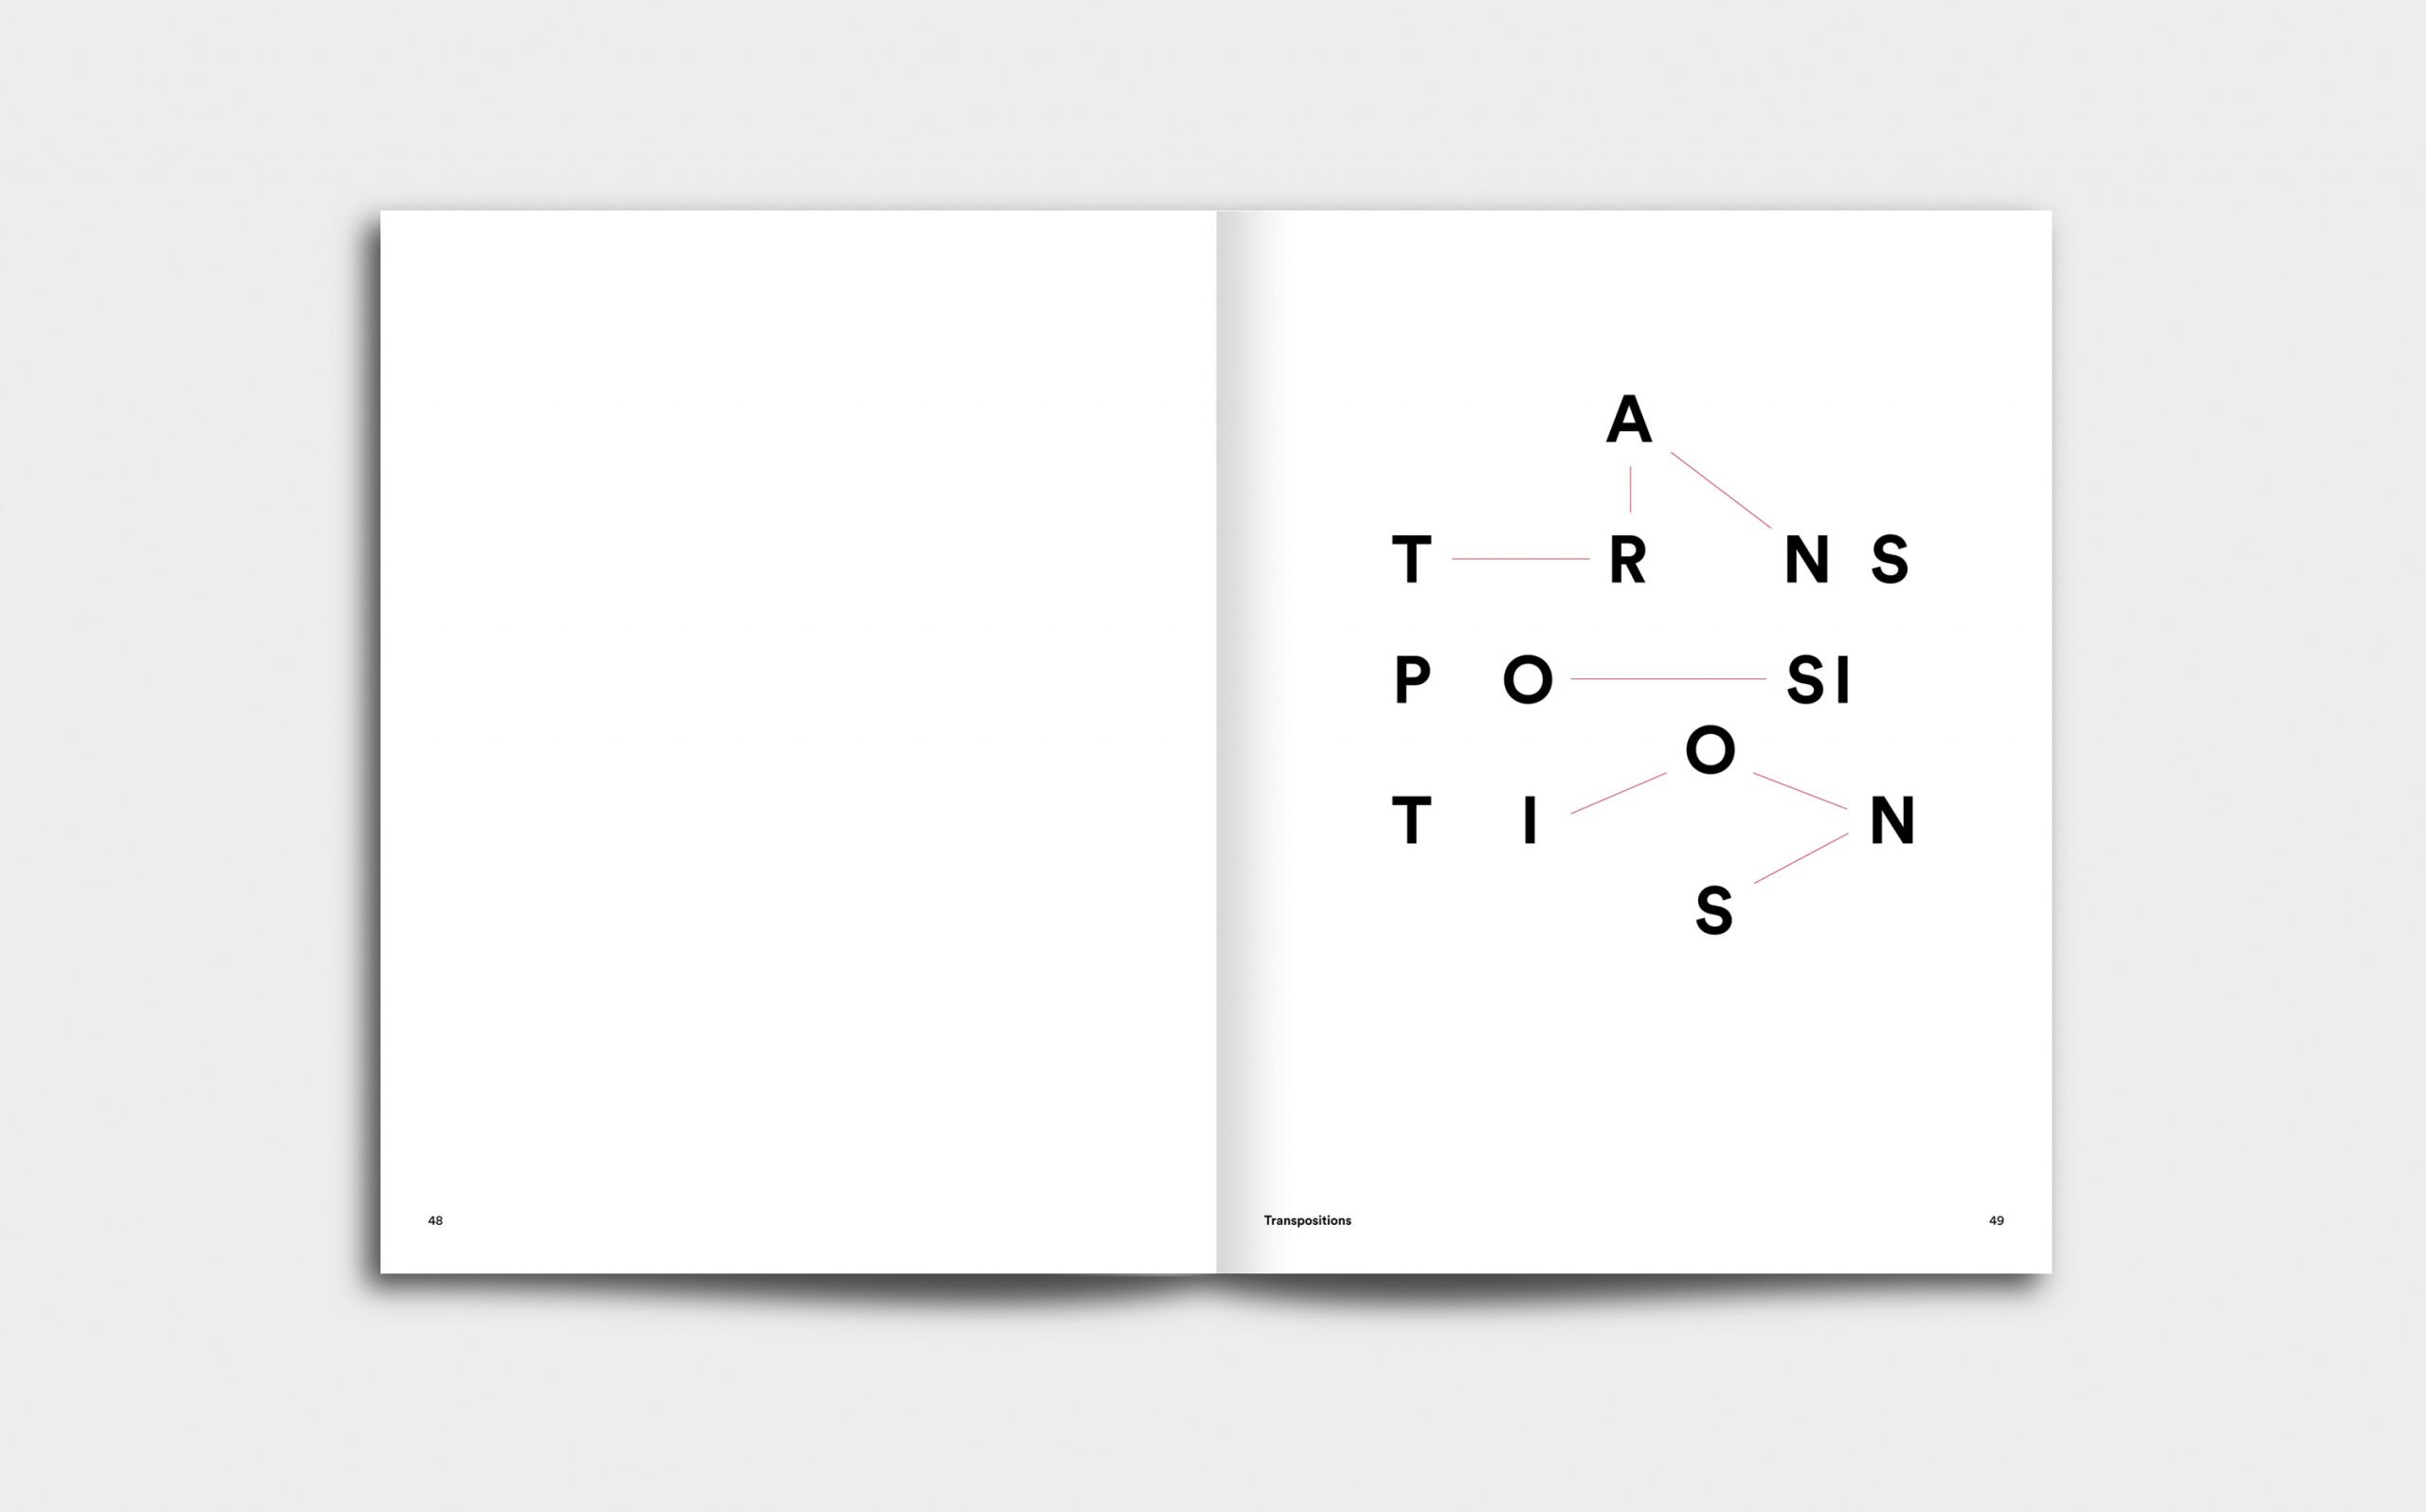 Juliana Herrero – REM 1:1 | Kapitel Opener mit grafischer Inszenierung des Titels »Transpositions« | Keywords: Editorial Design, Artist Book, Künstlerbuch, Buchgestaltung, Grafikdesign, Design, Typografie